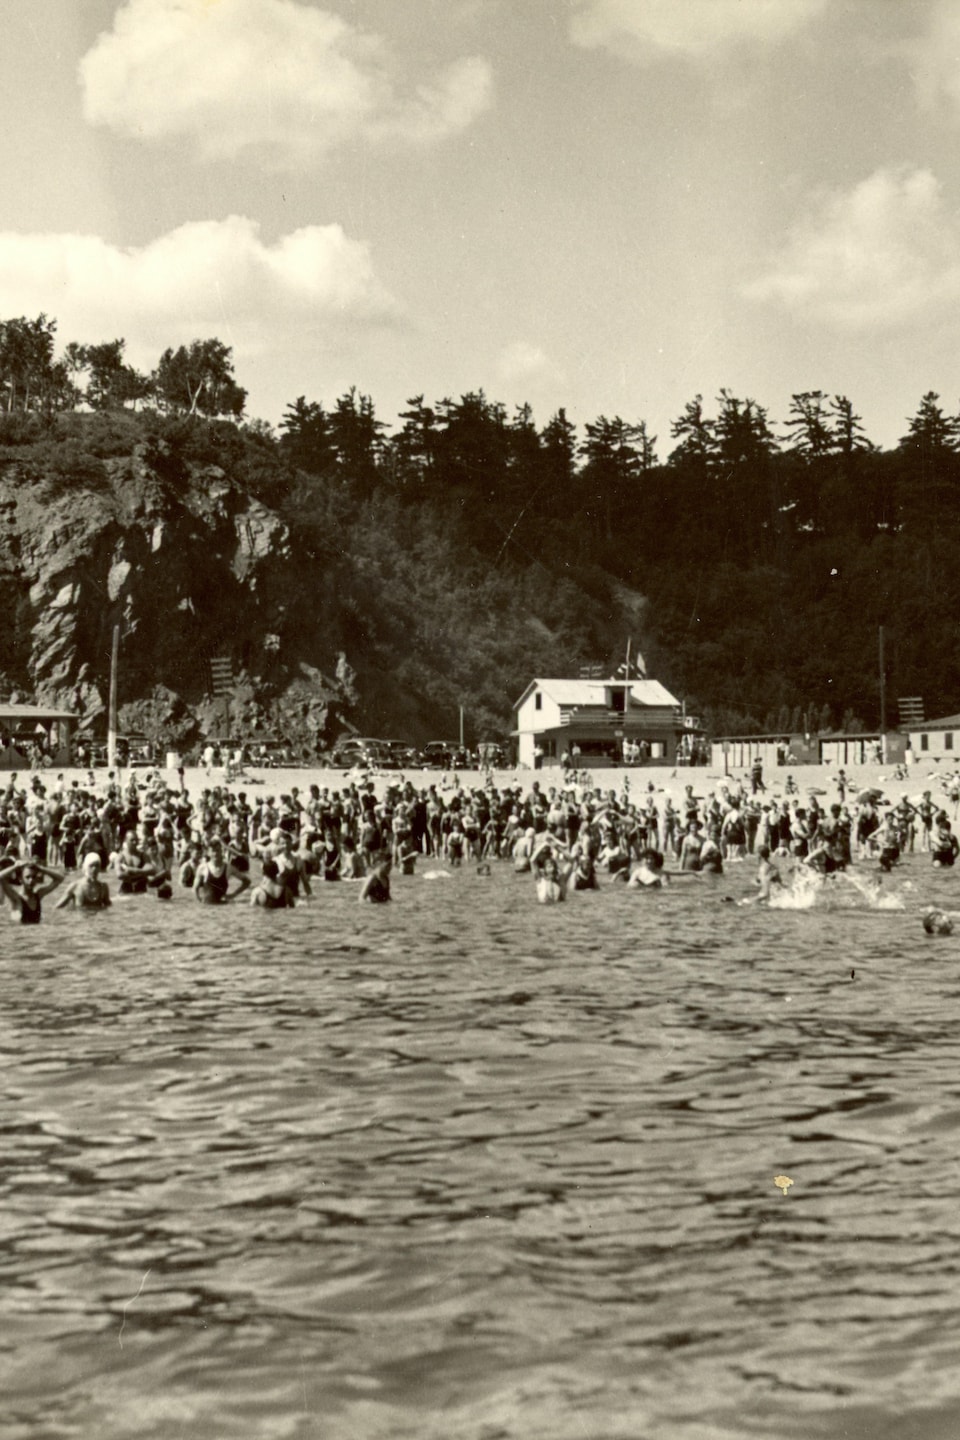 Le plaisir de se baigner dans le fleuve entre Québec et Sillery en 1938. La foule est nombreuse, il y a plus de gens dans l'eau que sur la plage, et il fait clairement très chaud.